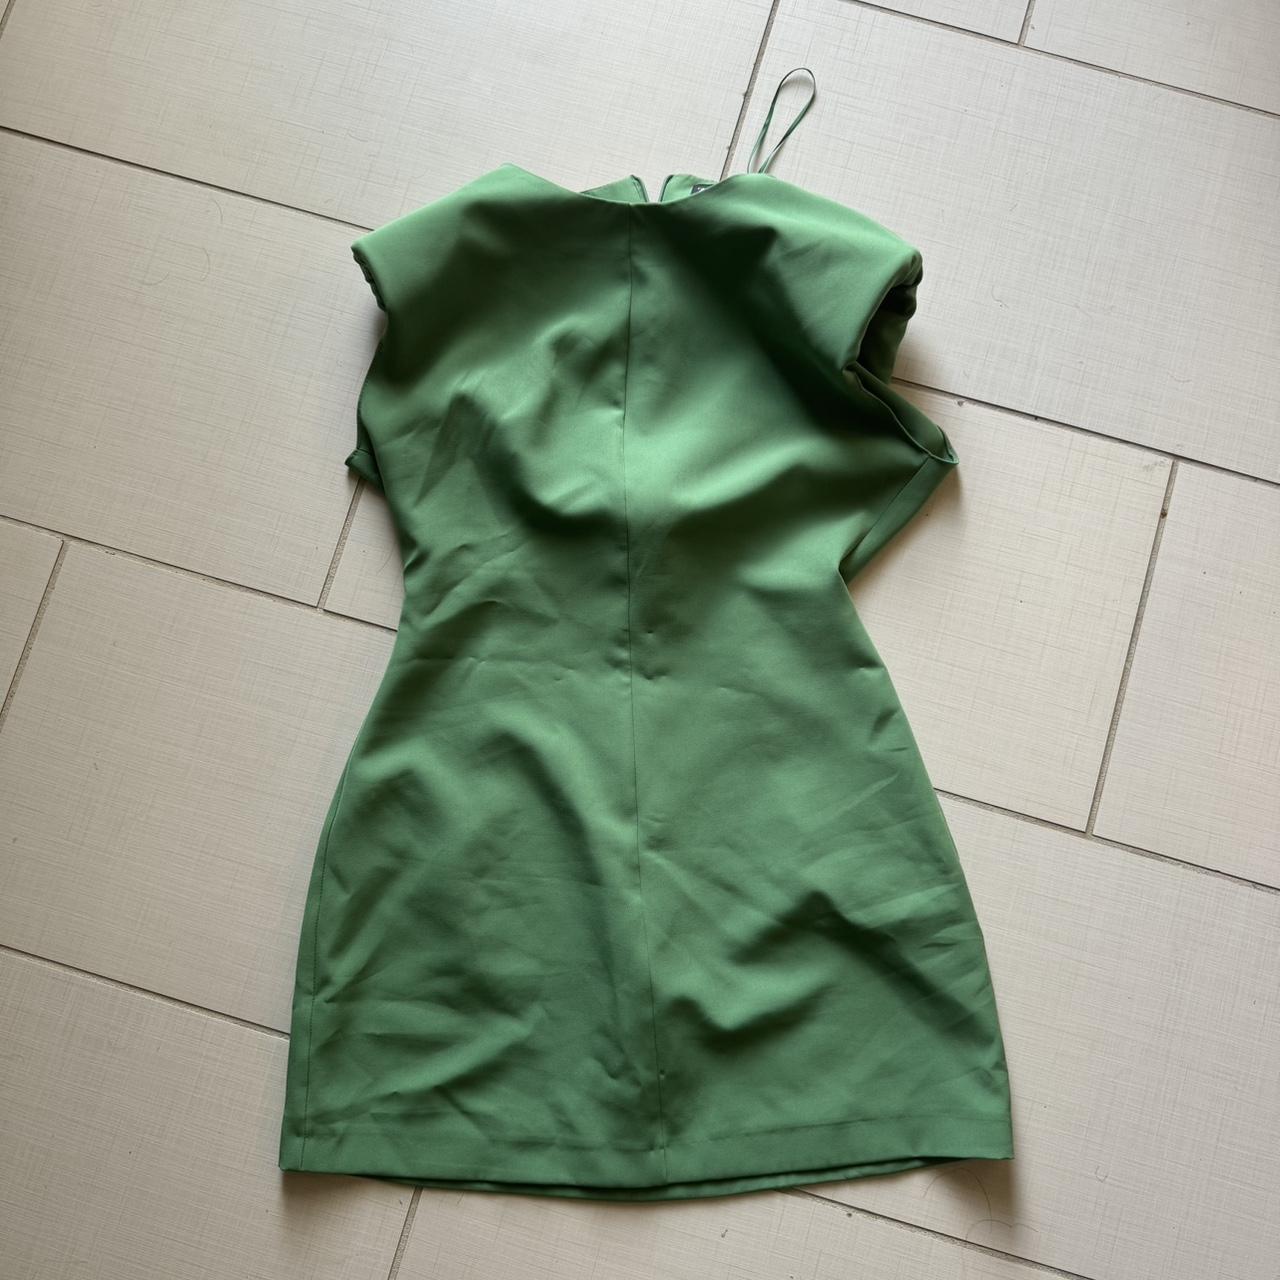 Sonoma dress shirt green XL #dress #dressshirt - Depop